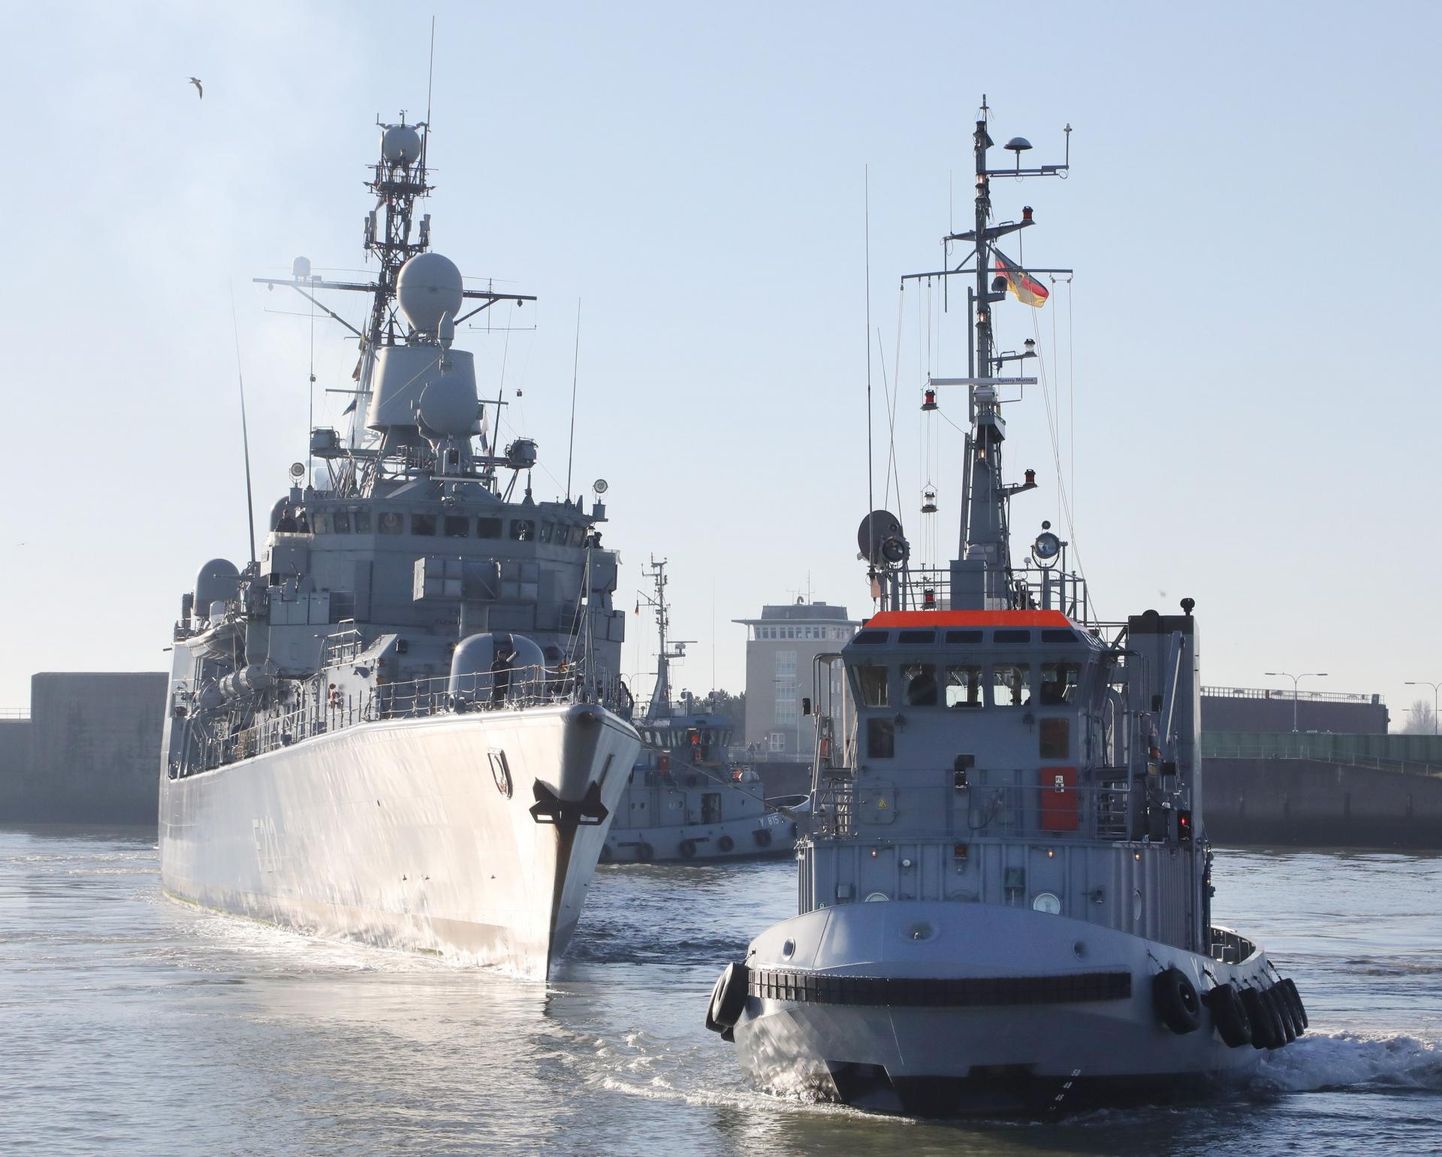 Täna tutvustatav raport paneb Läänemere kaitses suurimad lootused Saksamaale. Pildil naaseb fregatt Augsburg oma kodusadamasse Wilhelmshavenisse. 